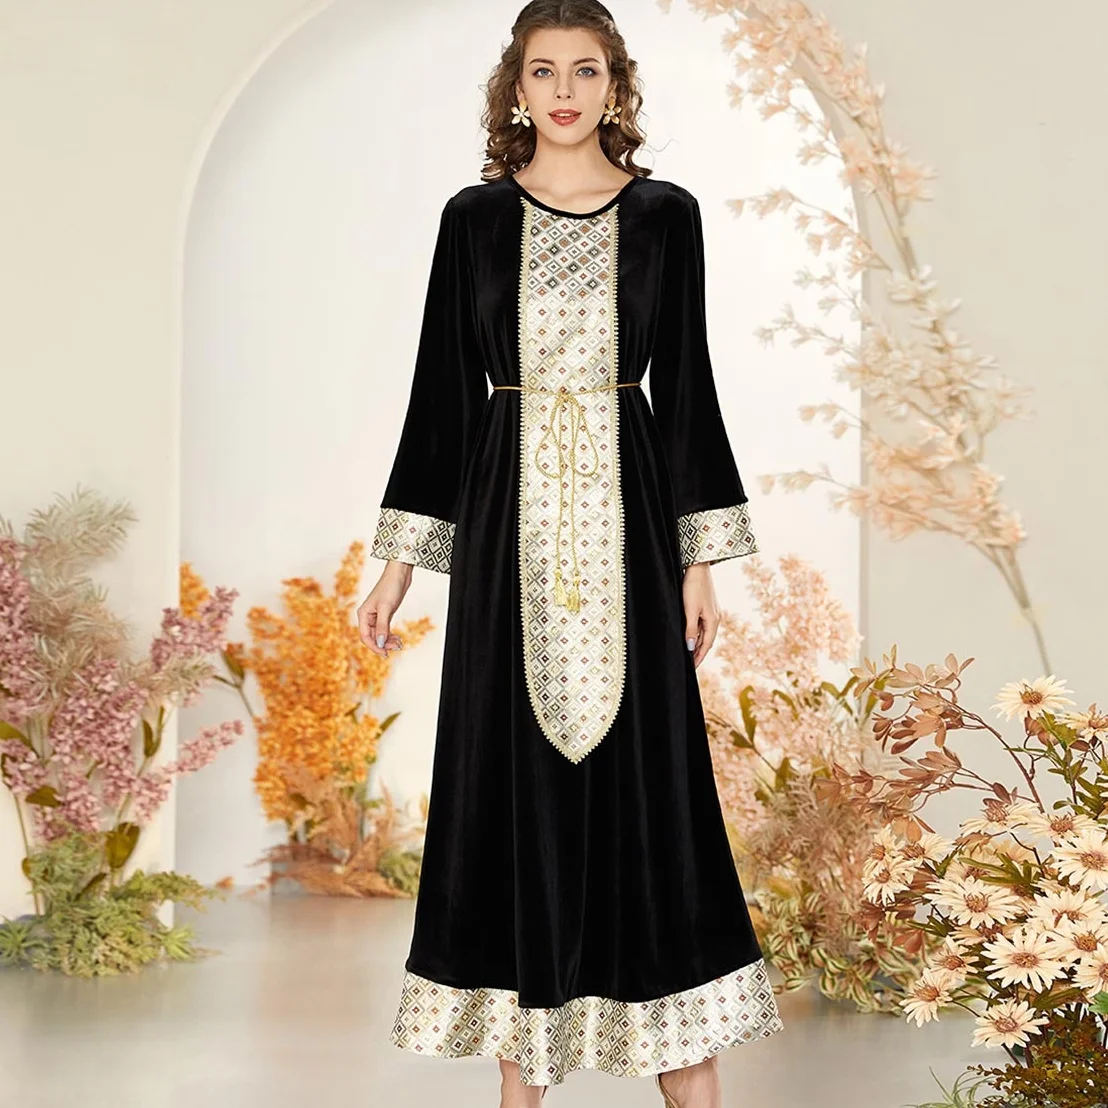 Женское этническое платье с вышивкой, элегантное золотистое жаккардовое длинное платье в мусульманском стиле, черное тонкое бархатное мус...